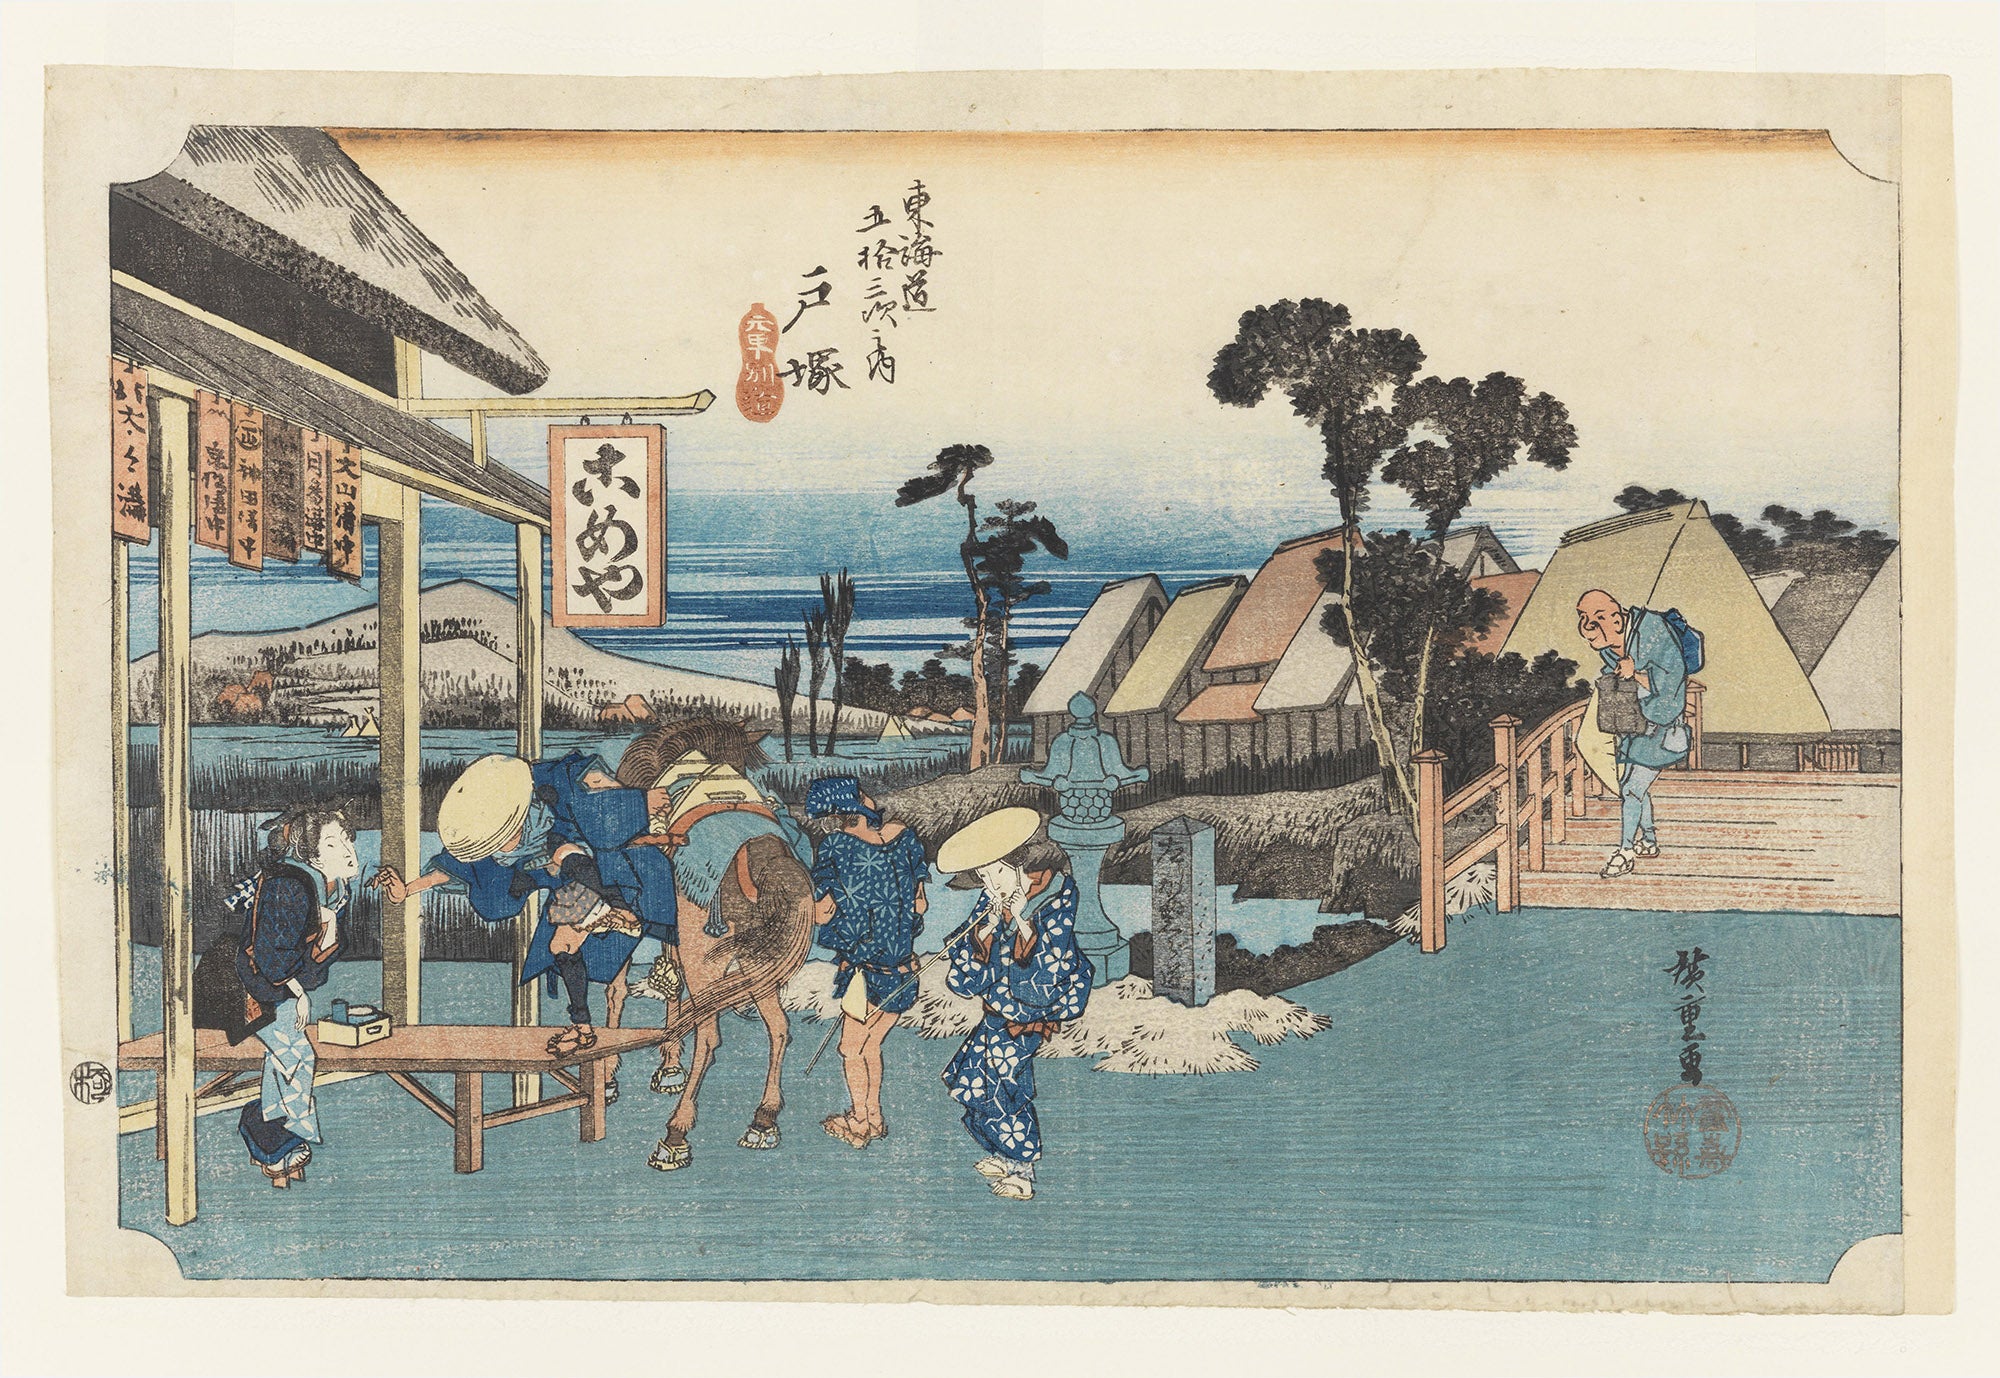 Estradas rurais e cenas urbanas nas gravuras japonesas em xilogravura